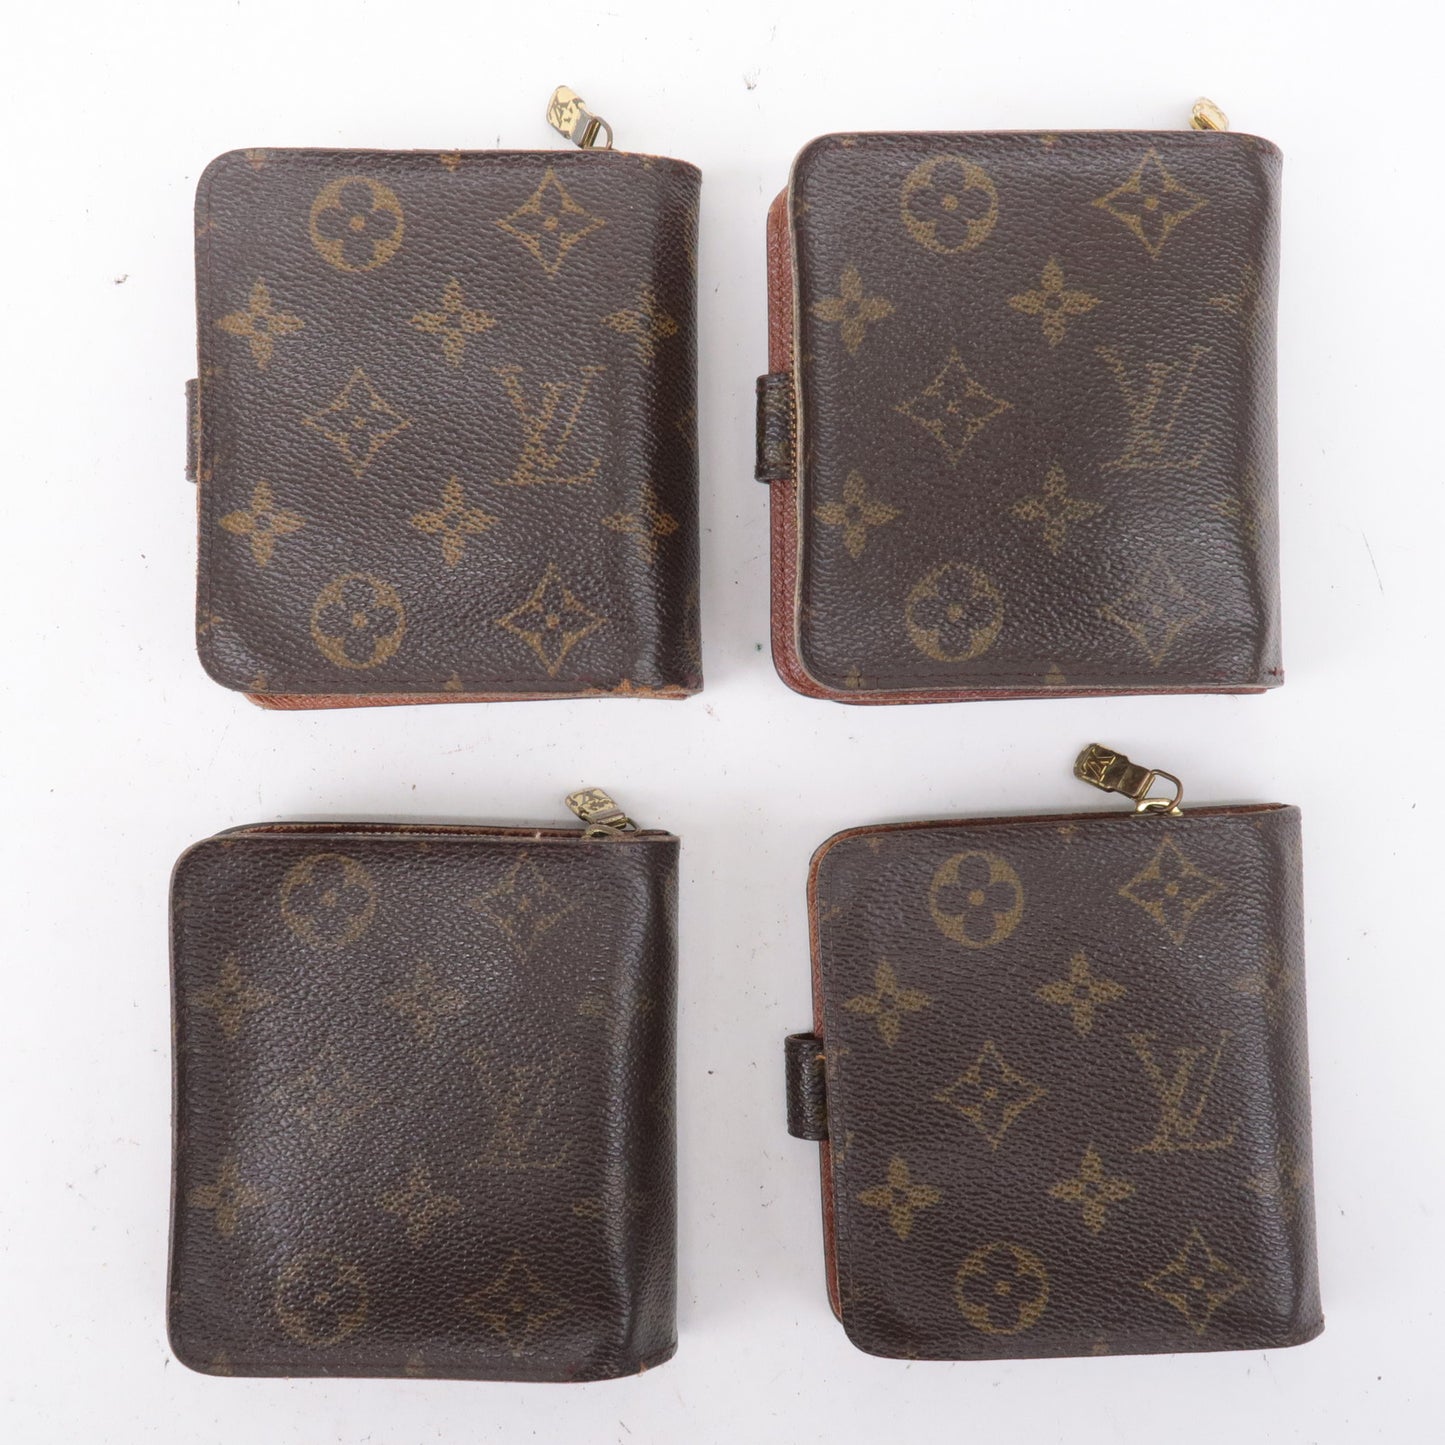 Louis Vuitton, Bags, Louis Vuitton Vintage Compact Wallet